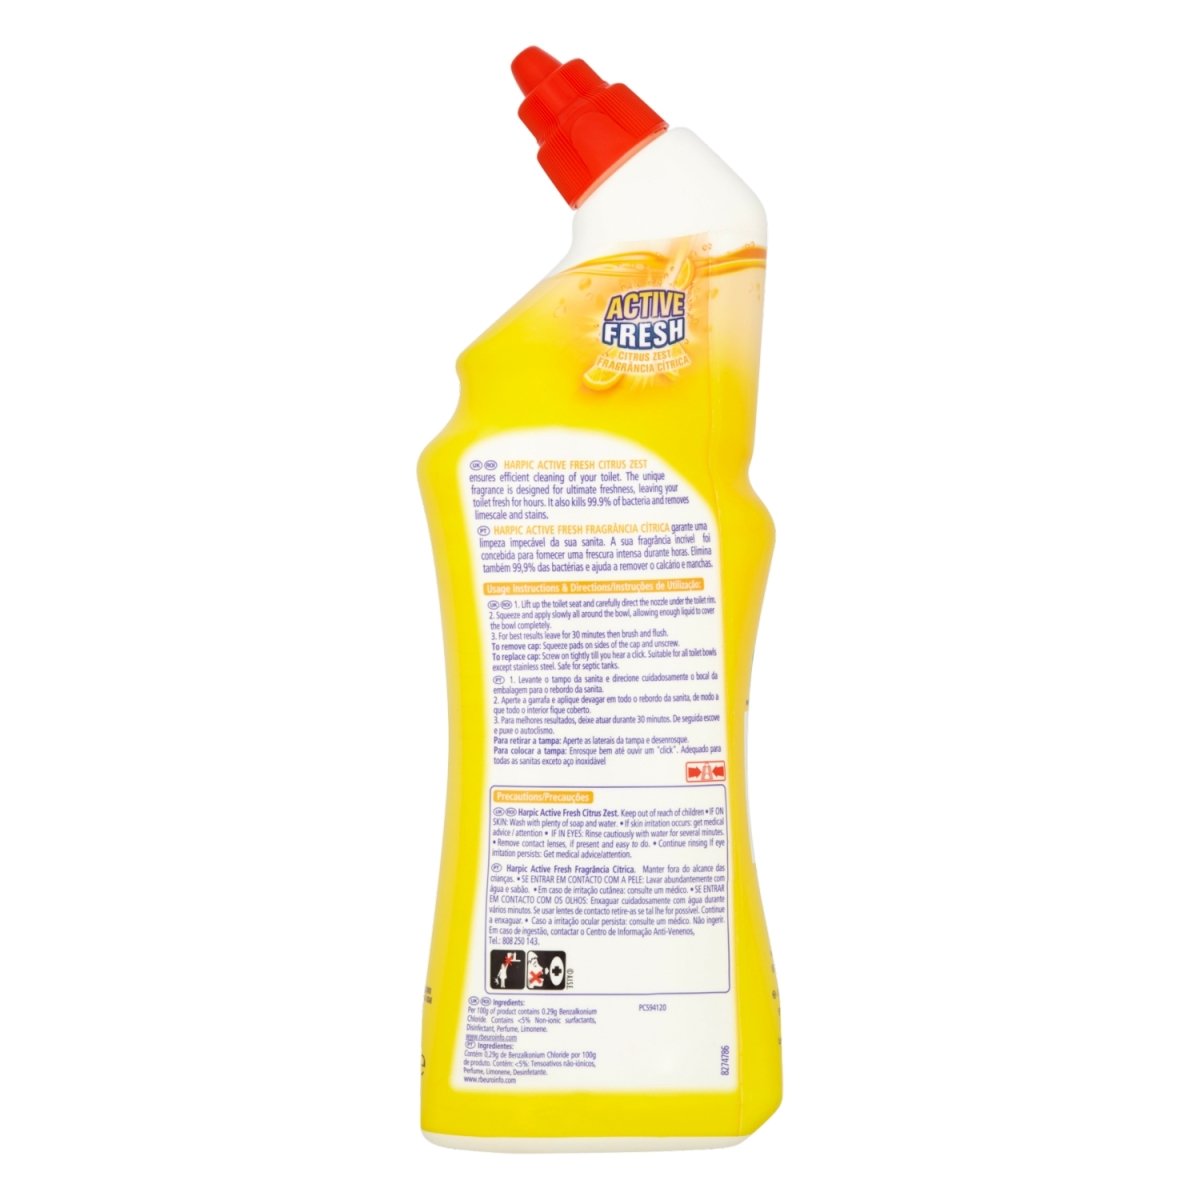 Harpic Active Cleaning Gel Citrus - Intamarque 5011417545676